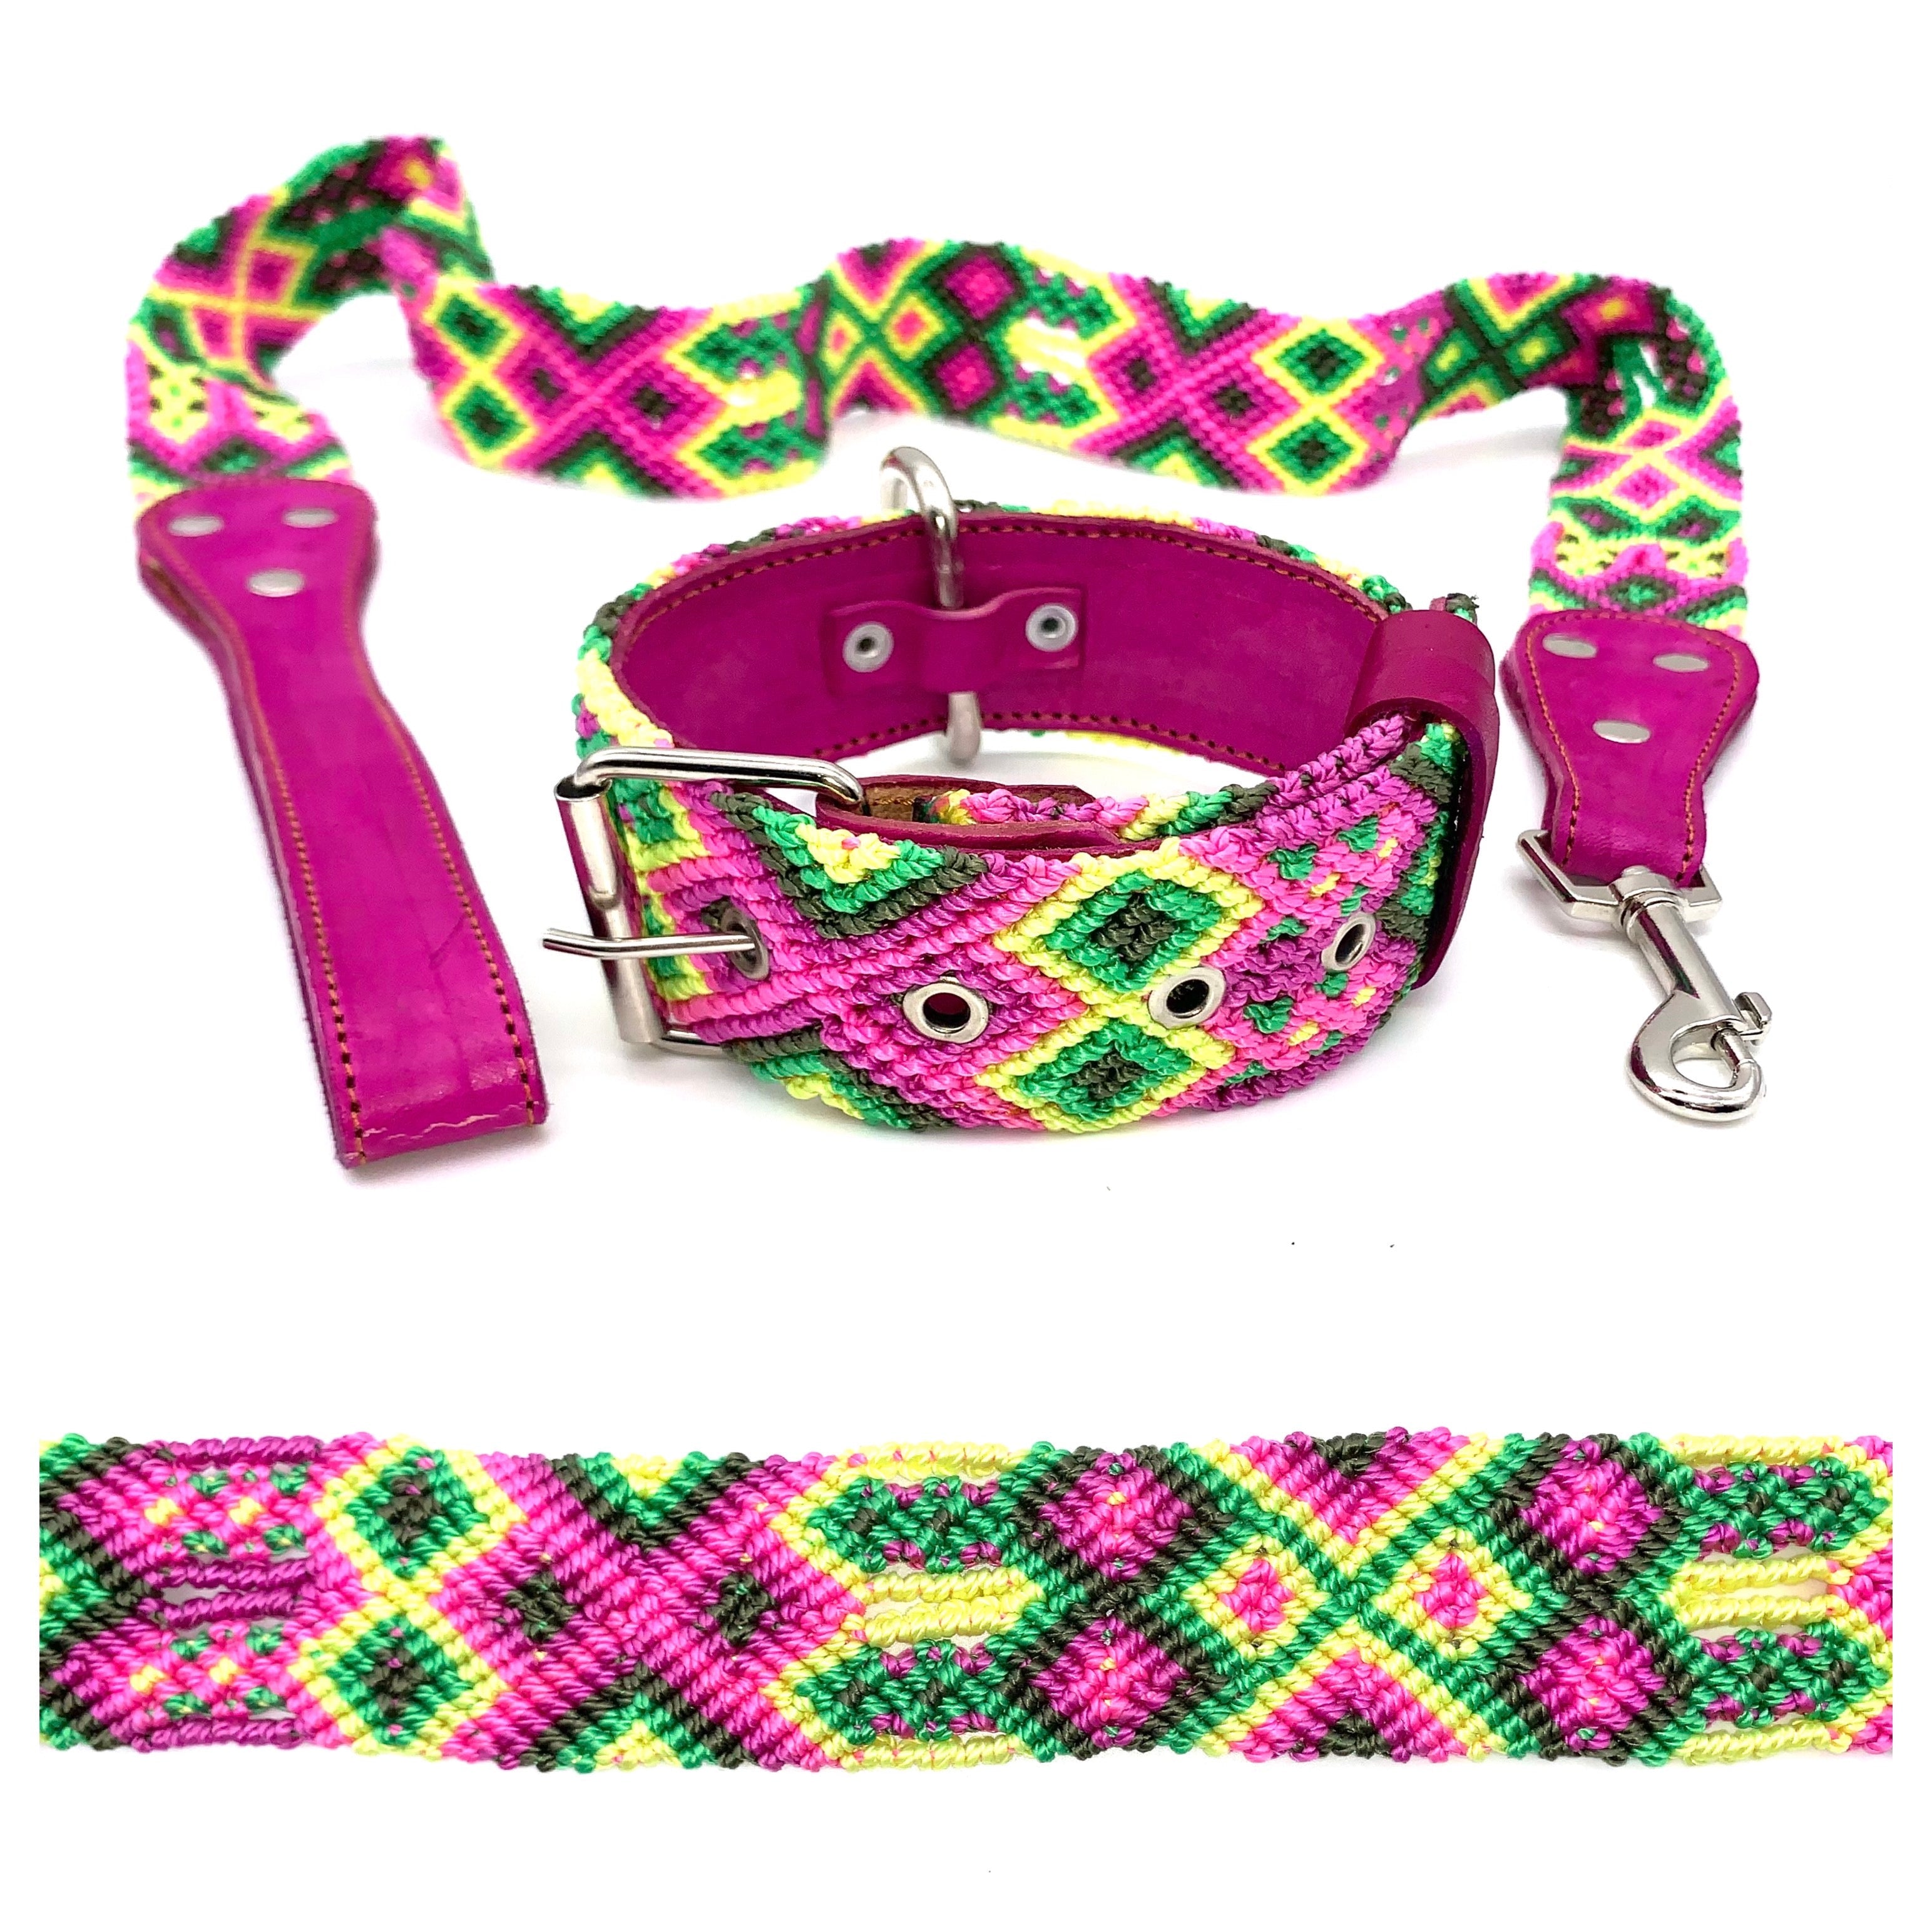 Handgefertigtes mexikanisches Hundehalsband aus besticktem Leder S (40-44cm)